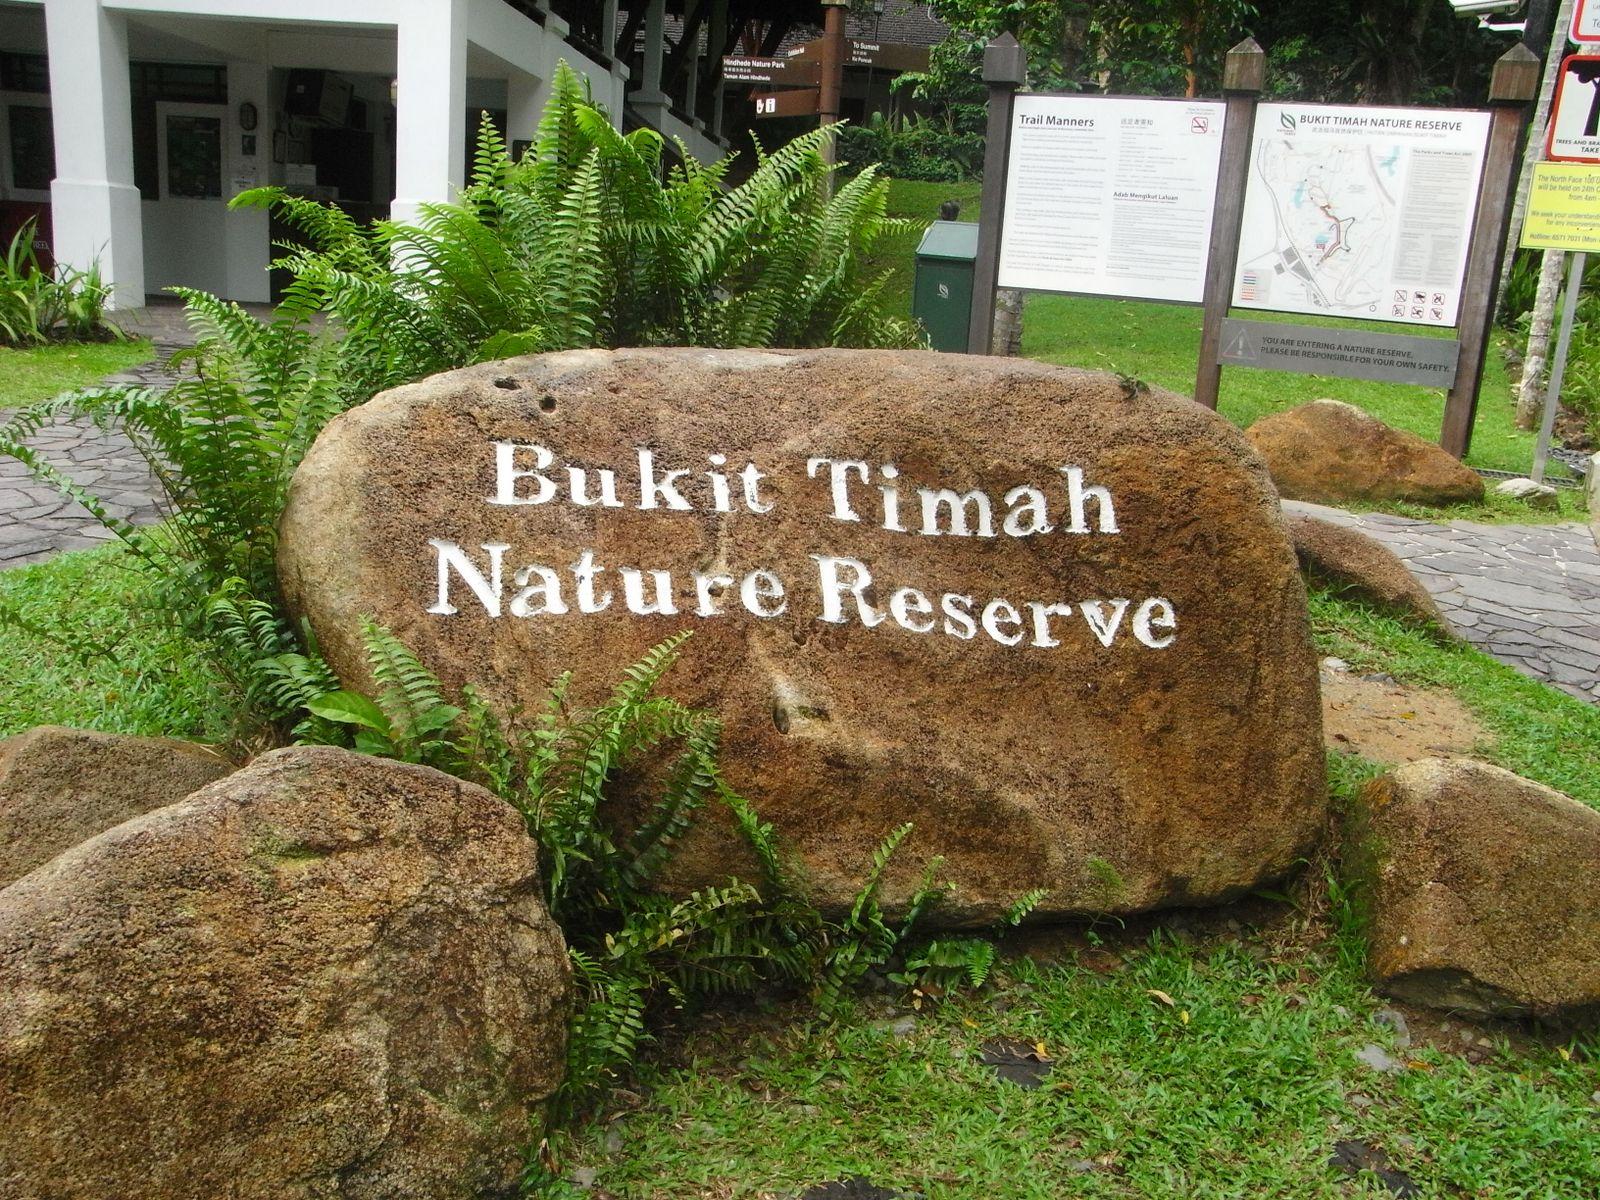 (Source: http://singaporecity360.com/bukit-timah-nature-reserve)